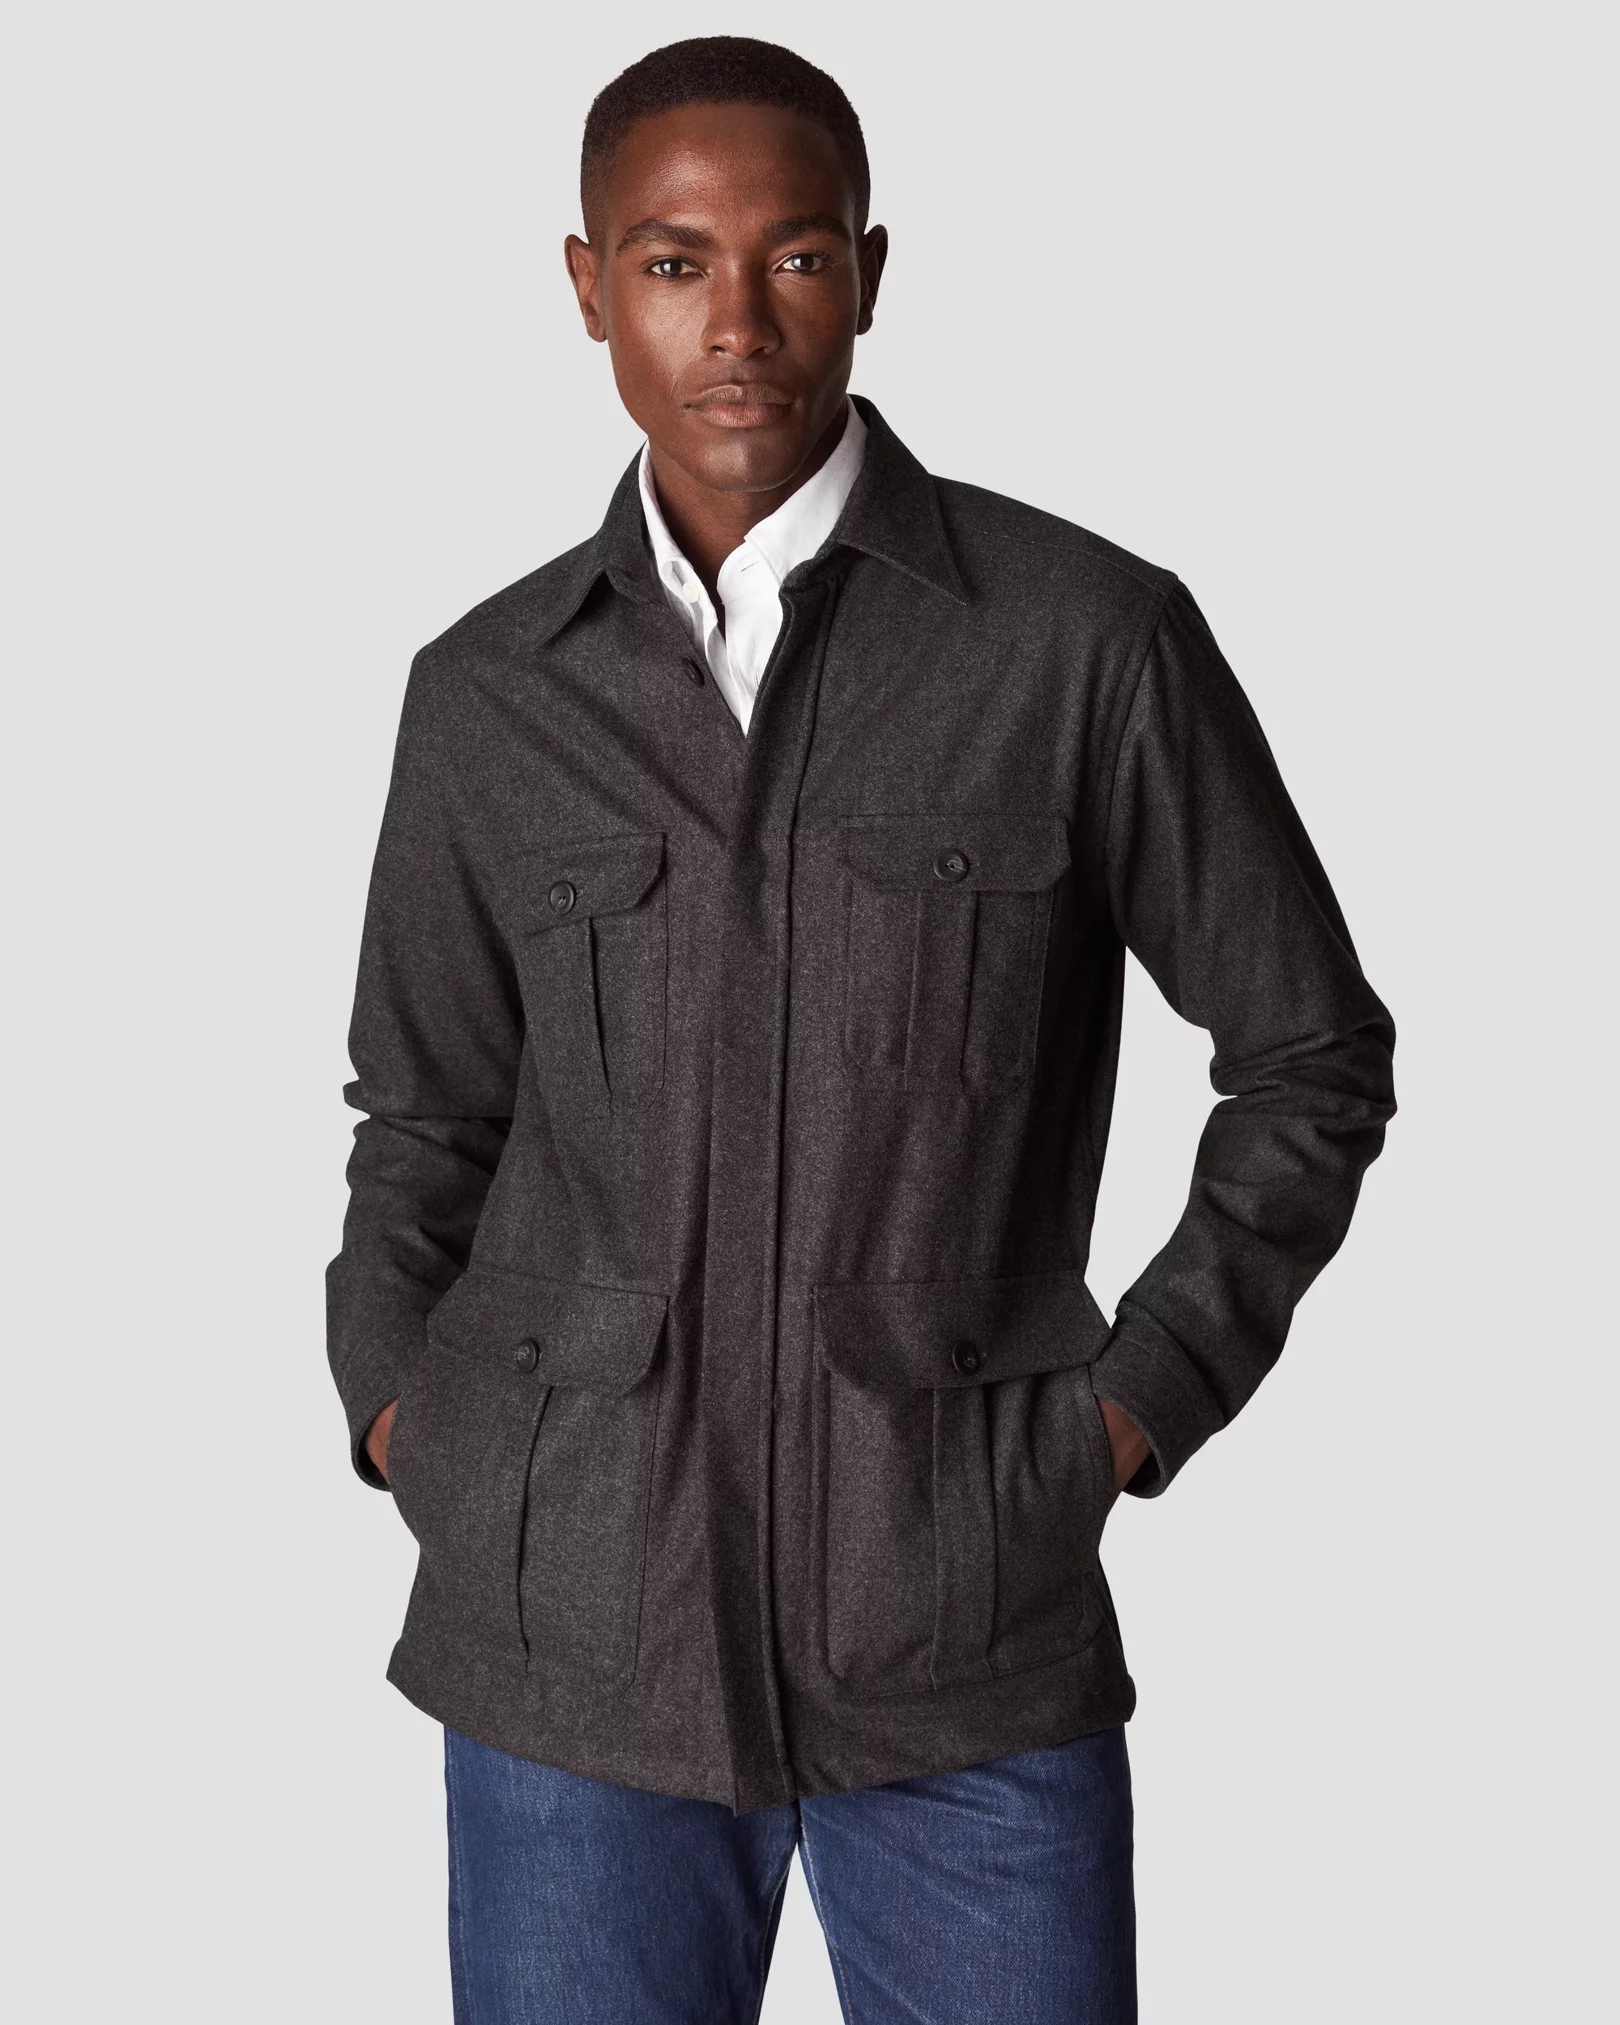 Eton - dark grey wool twill soft pointed single cuff pointed strap casual